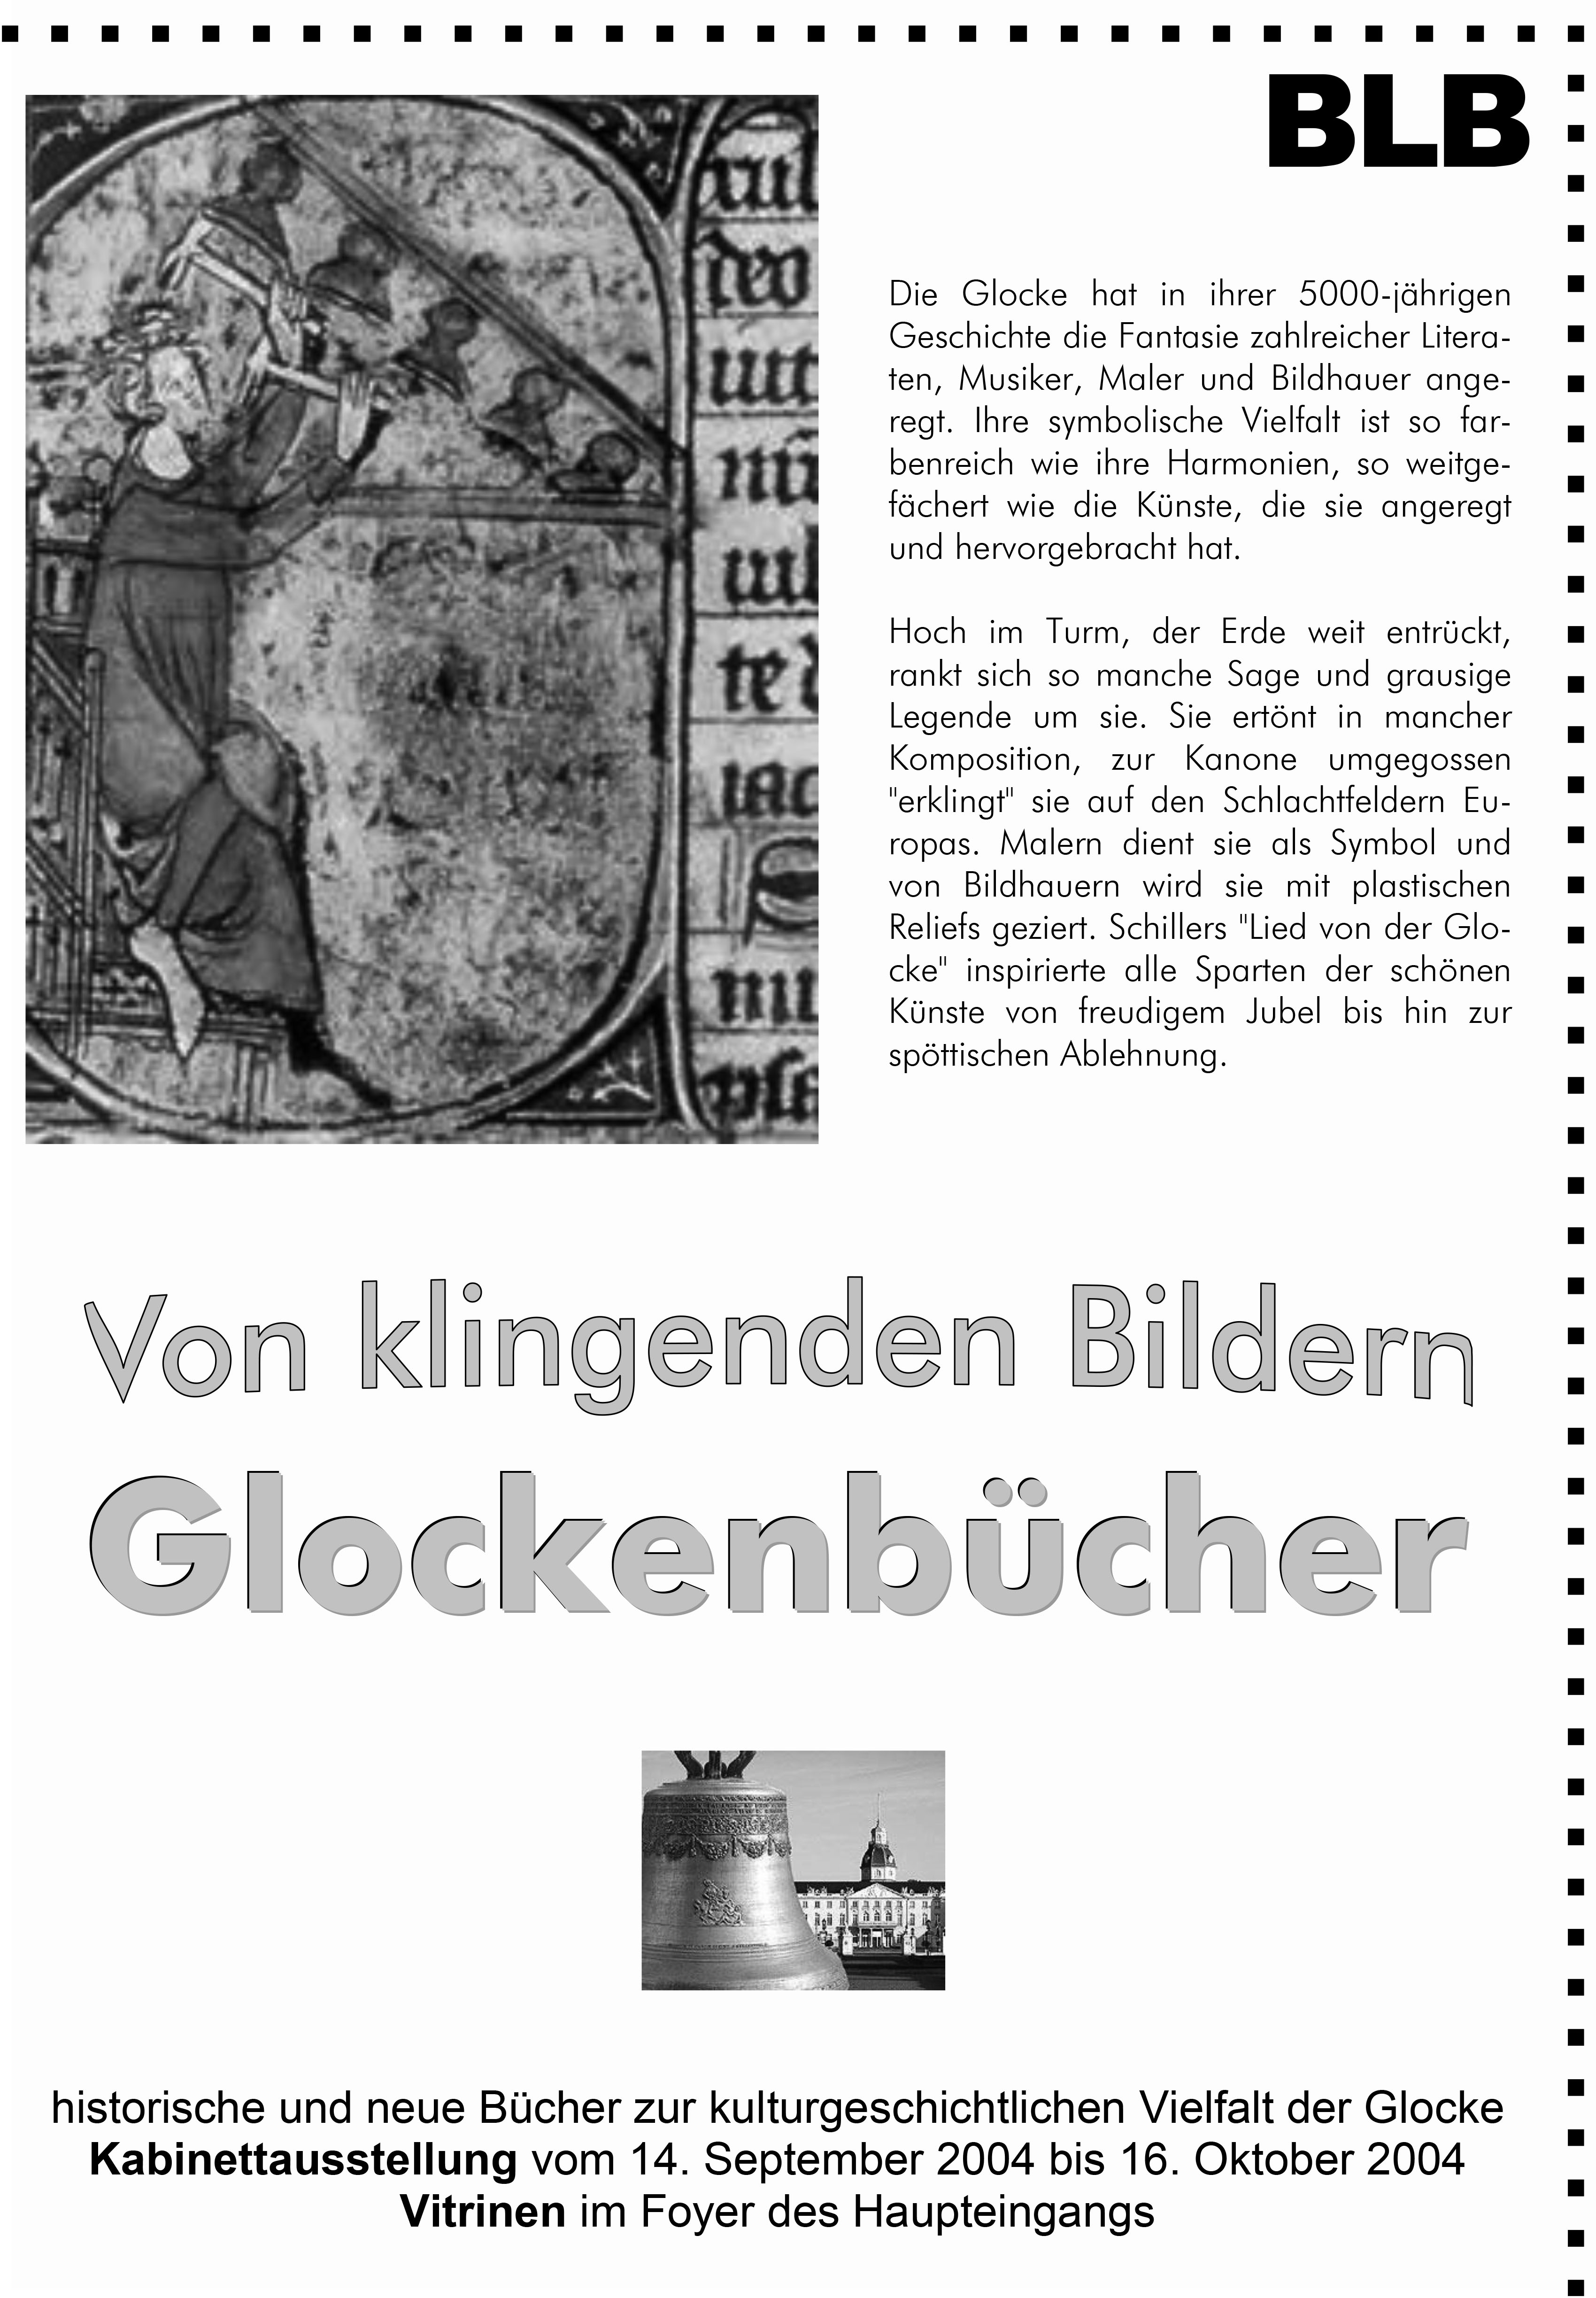 Das Plakat zeigt eine mittelalterliche Darstellung einer Glocke, wie auch ein Foto einer Glocke. Dazu Textinformationen zur Ausstellung. 